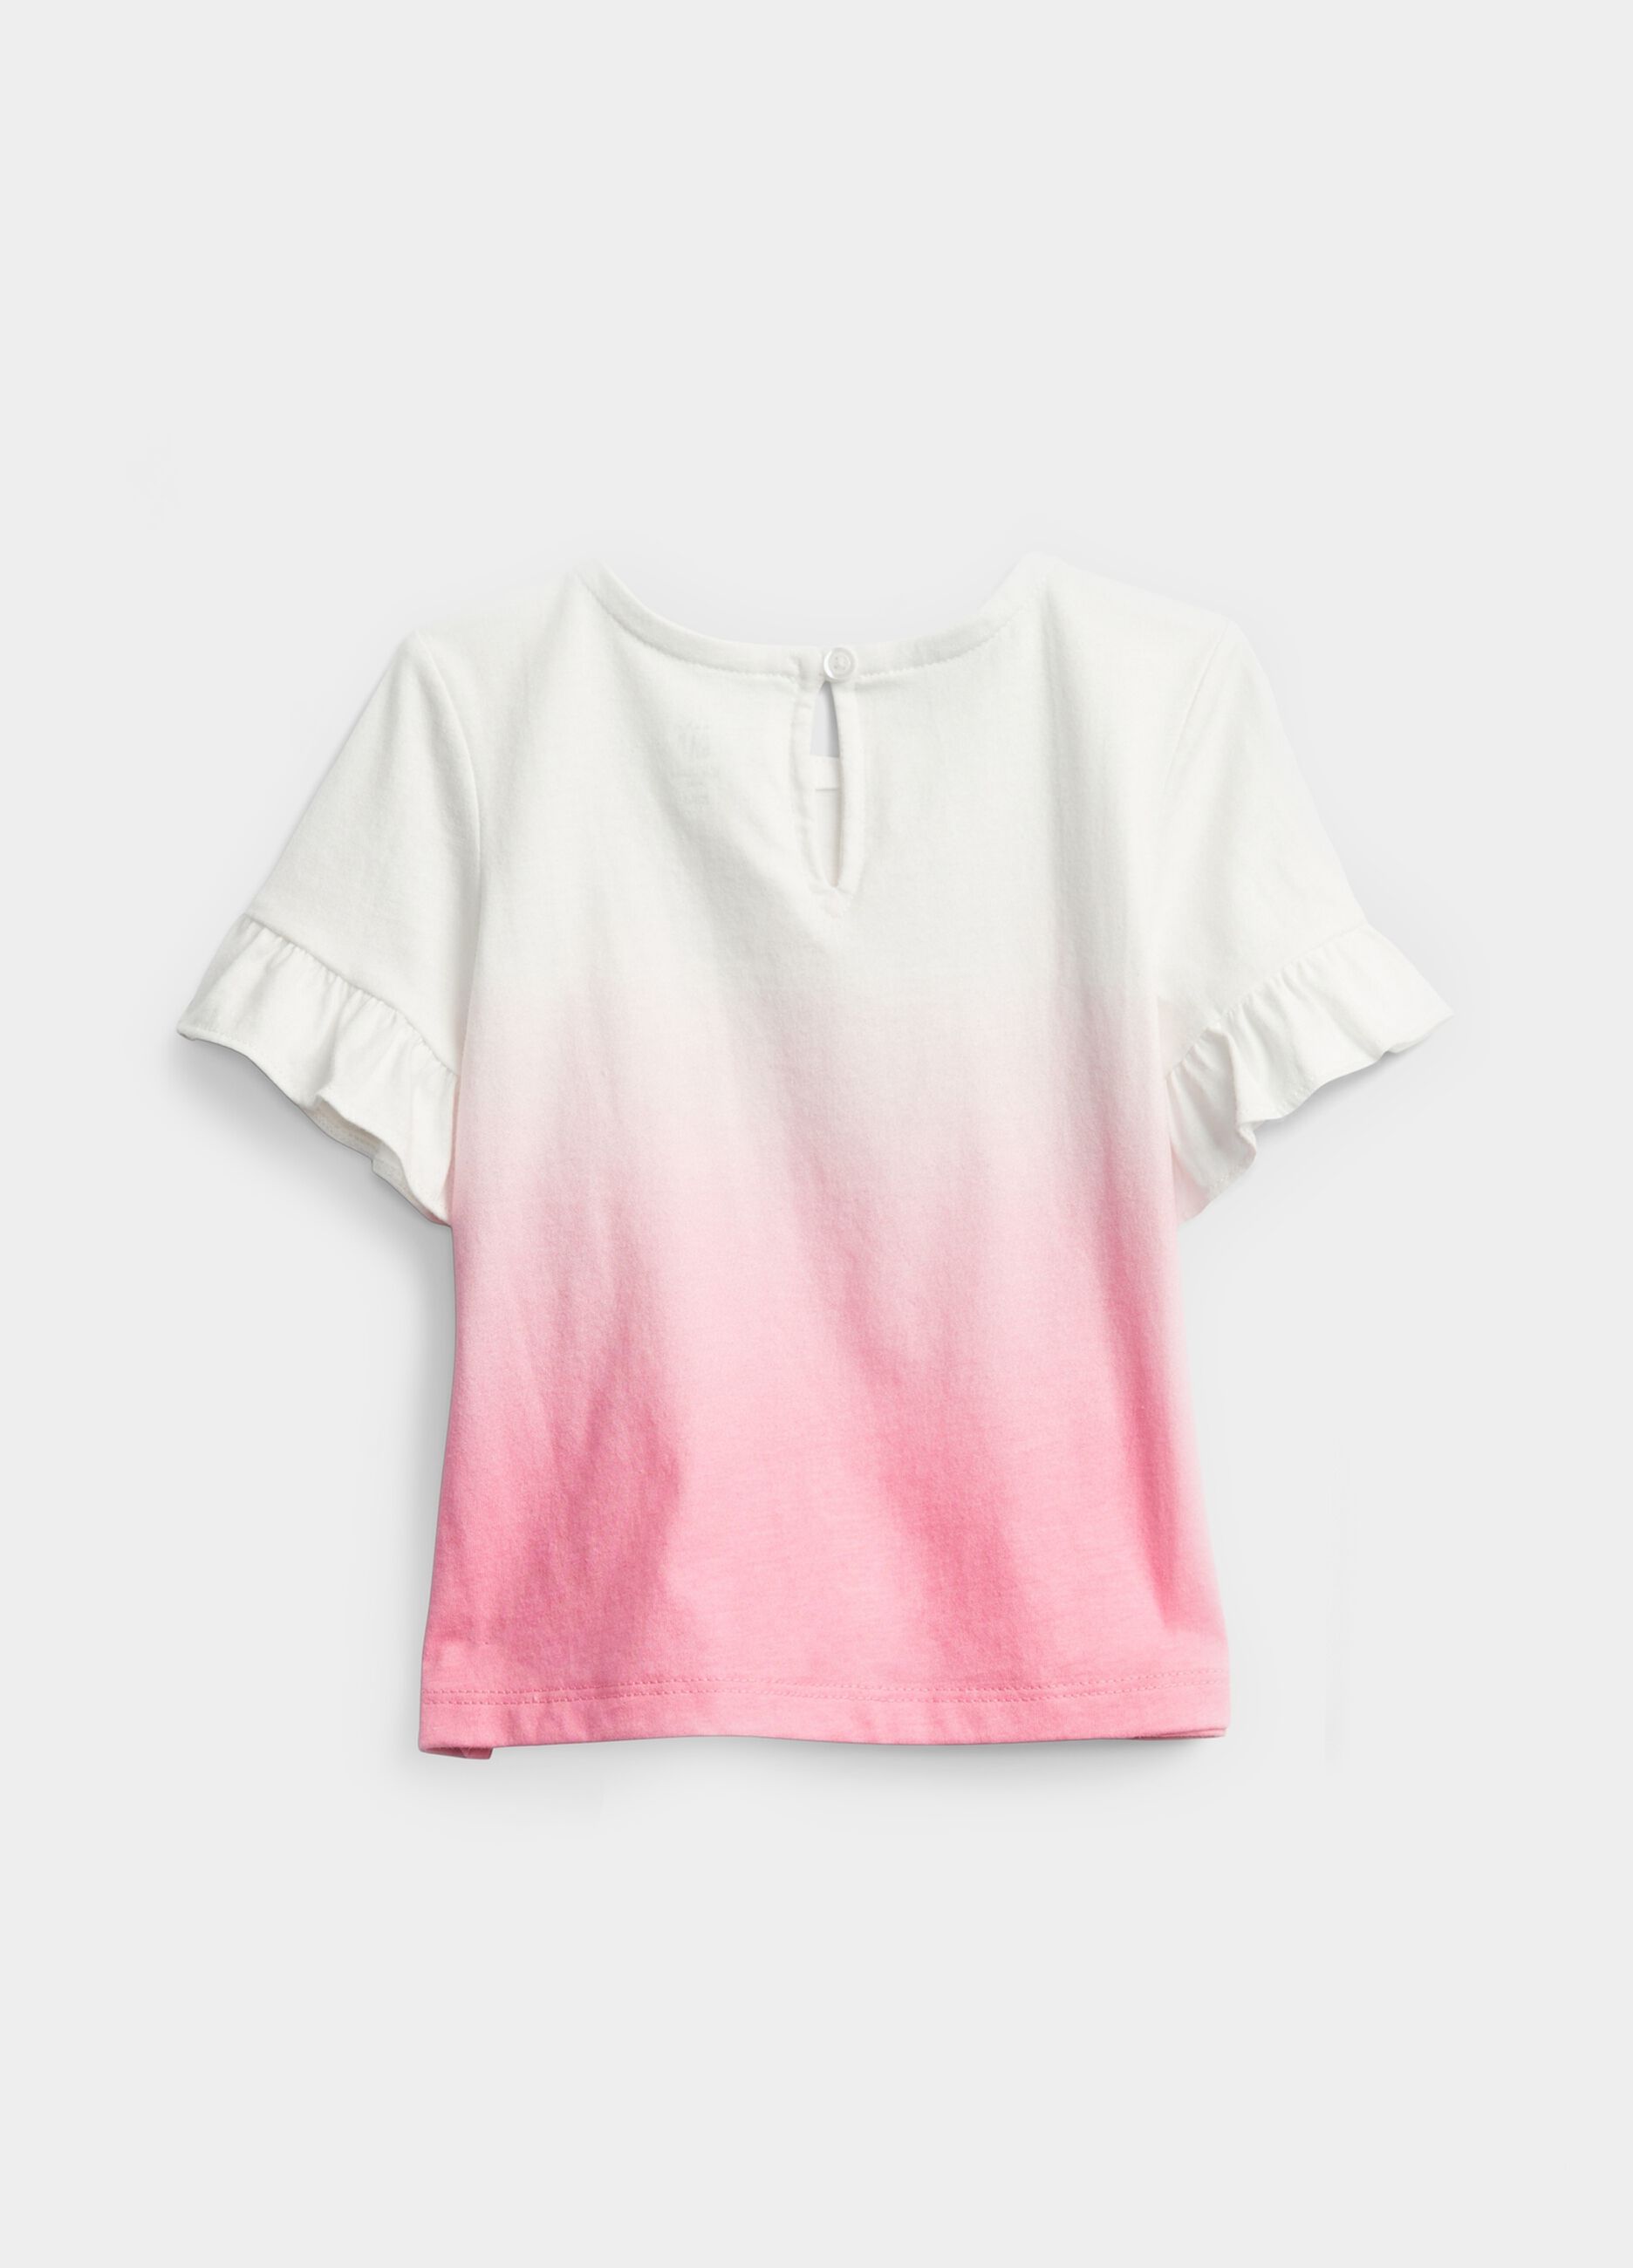 Degradé-effect T-shirt in cotton